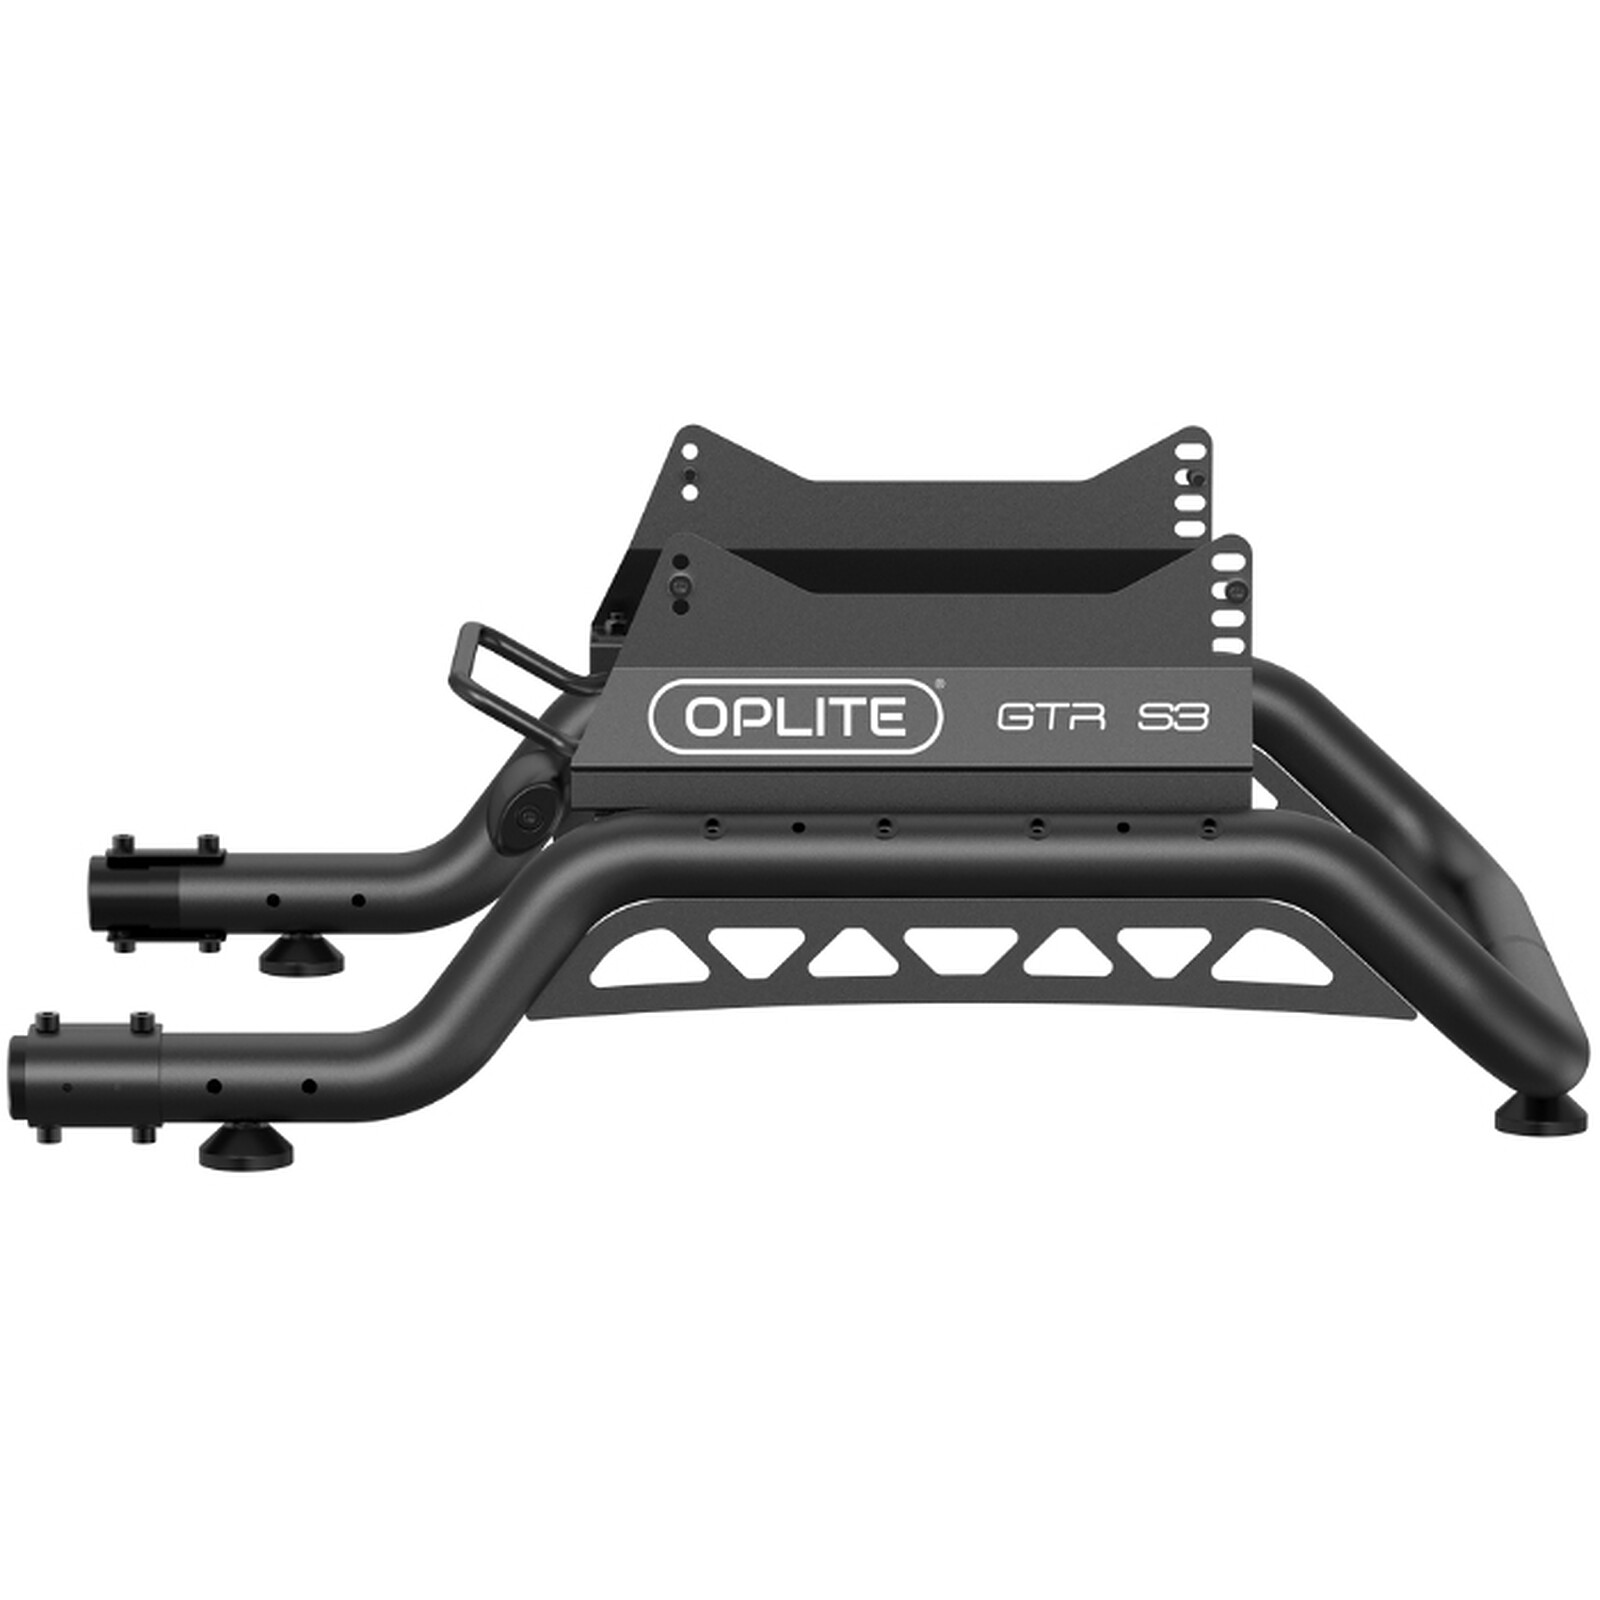 OPLITE GTR S3 Back Frame - Autres accessoires jeu - Garantie 3 ans LDLC